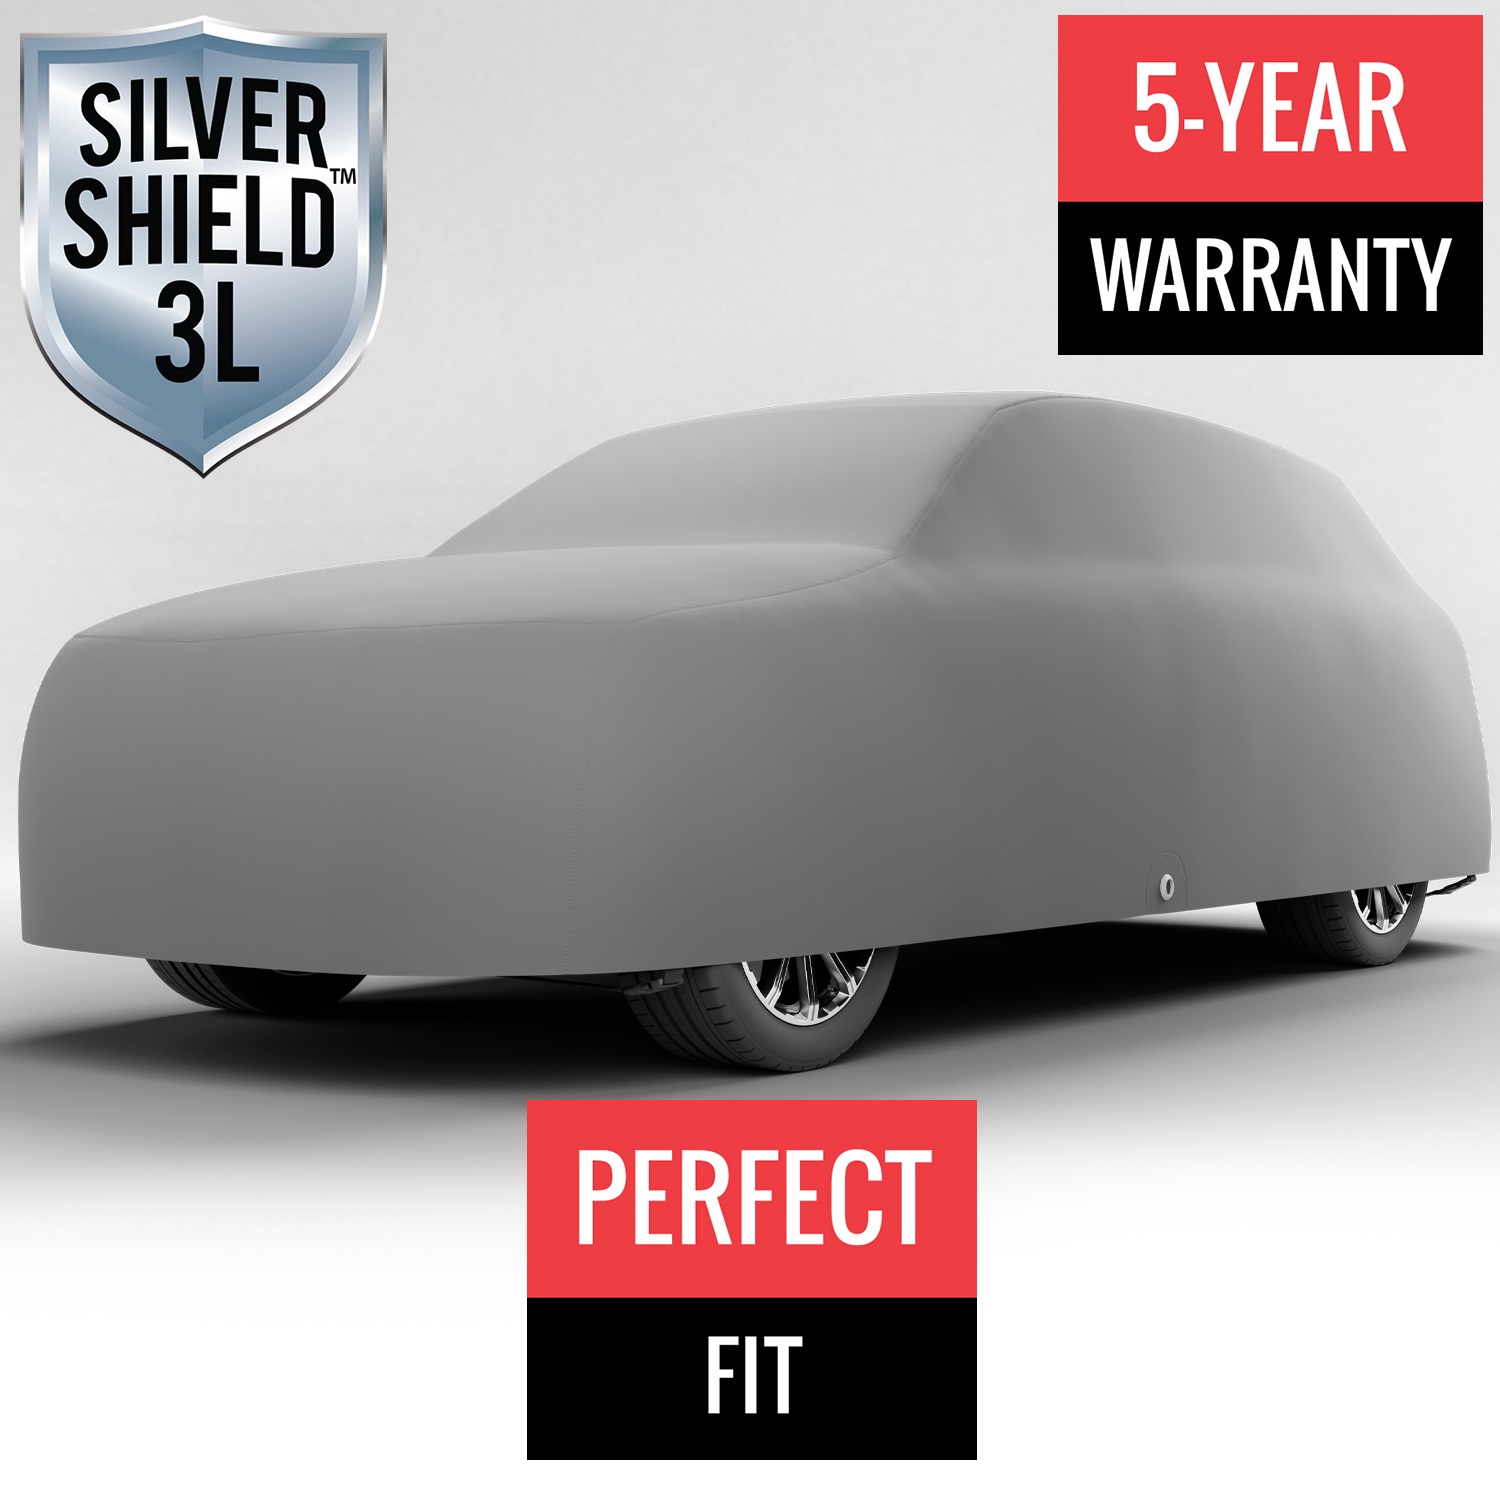 Silver Shield 3L - Car Cover for Mazda CX-9 2016 SUV 4-Door